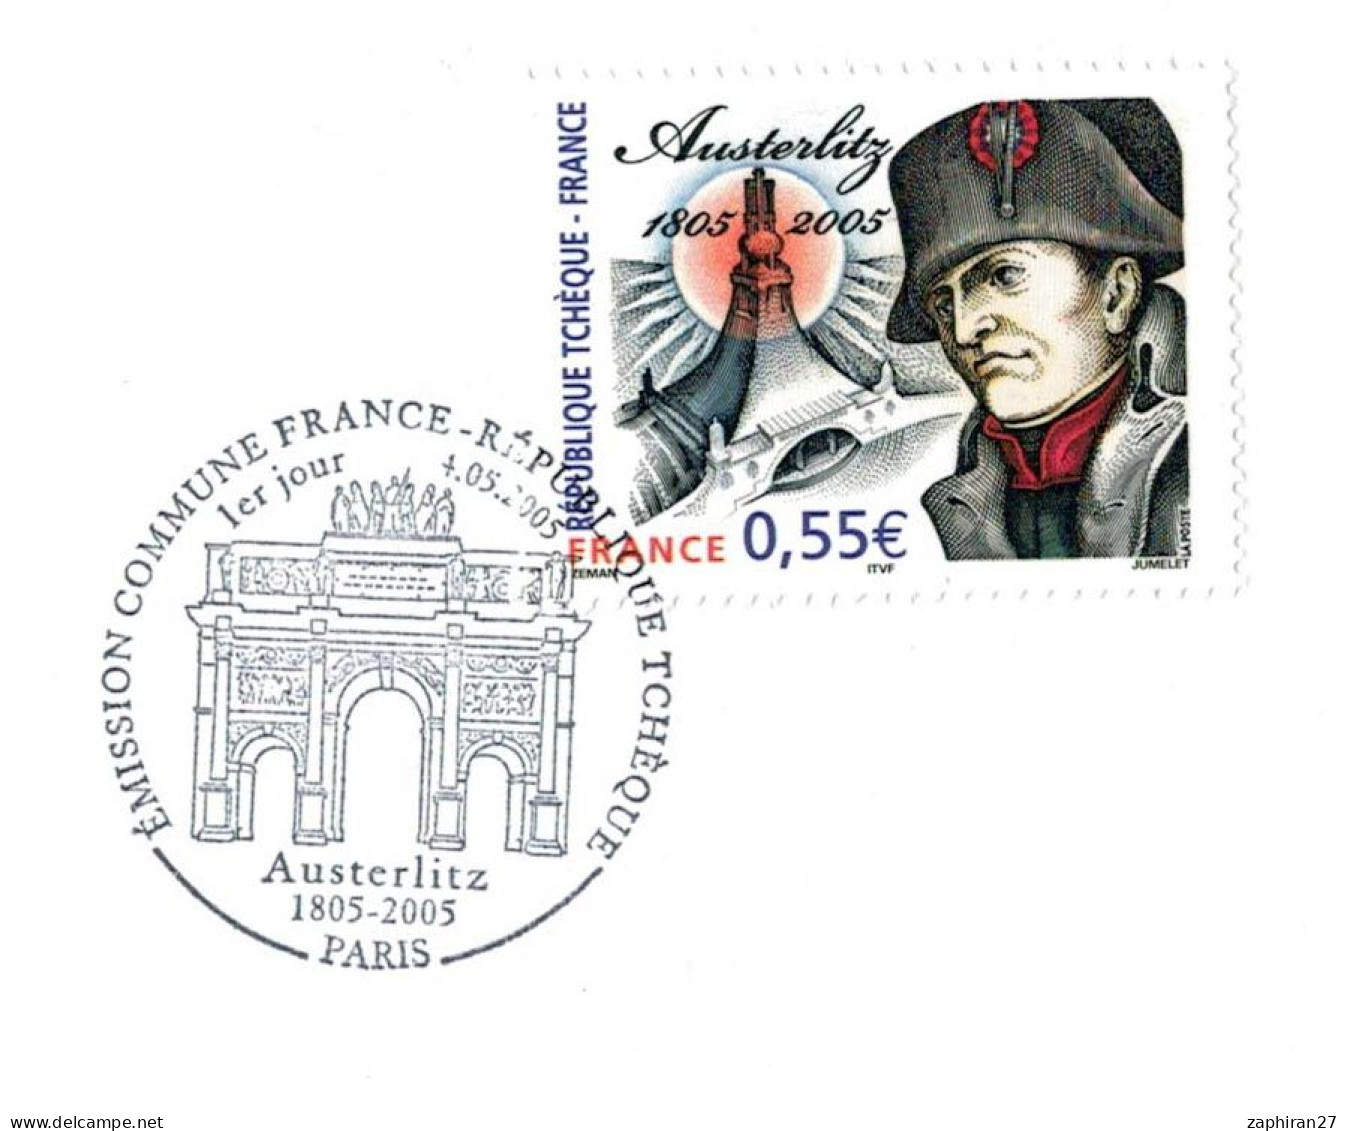 PARIS EMISSION COMMUNE FRACE - REPUBLIQUE TCHEQUE NAPOLEON AUSTERLITZ 1805/2005 (4-5-2005) #414# - Napoléon